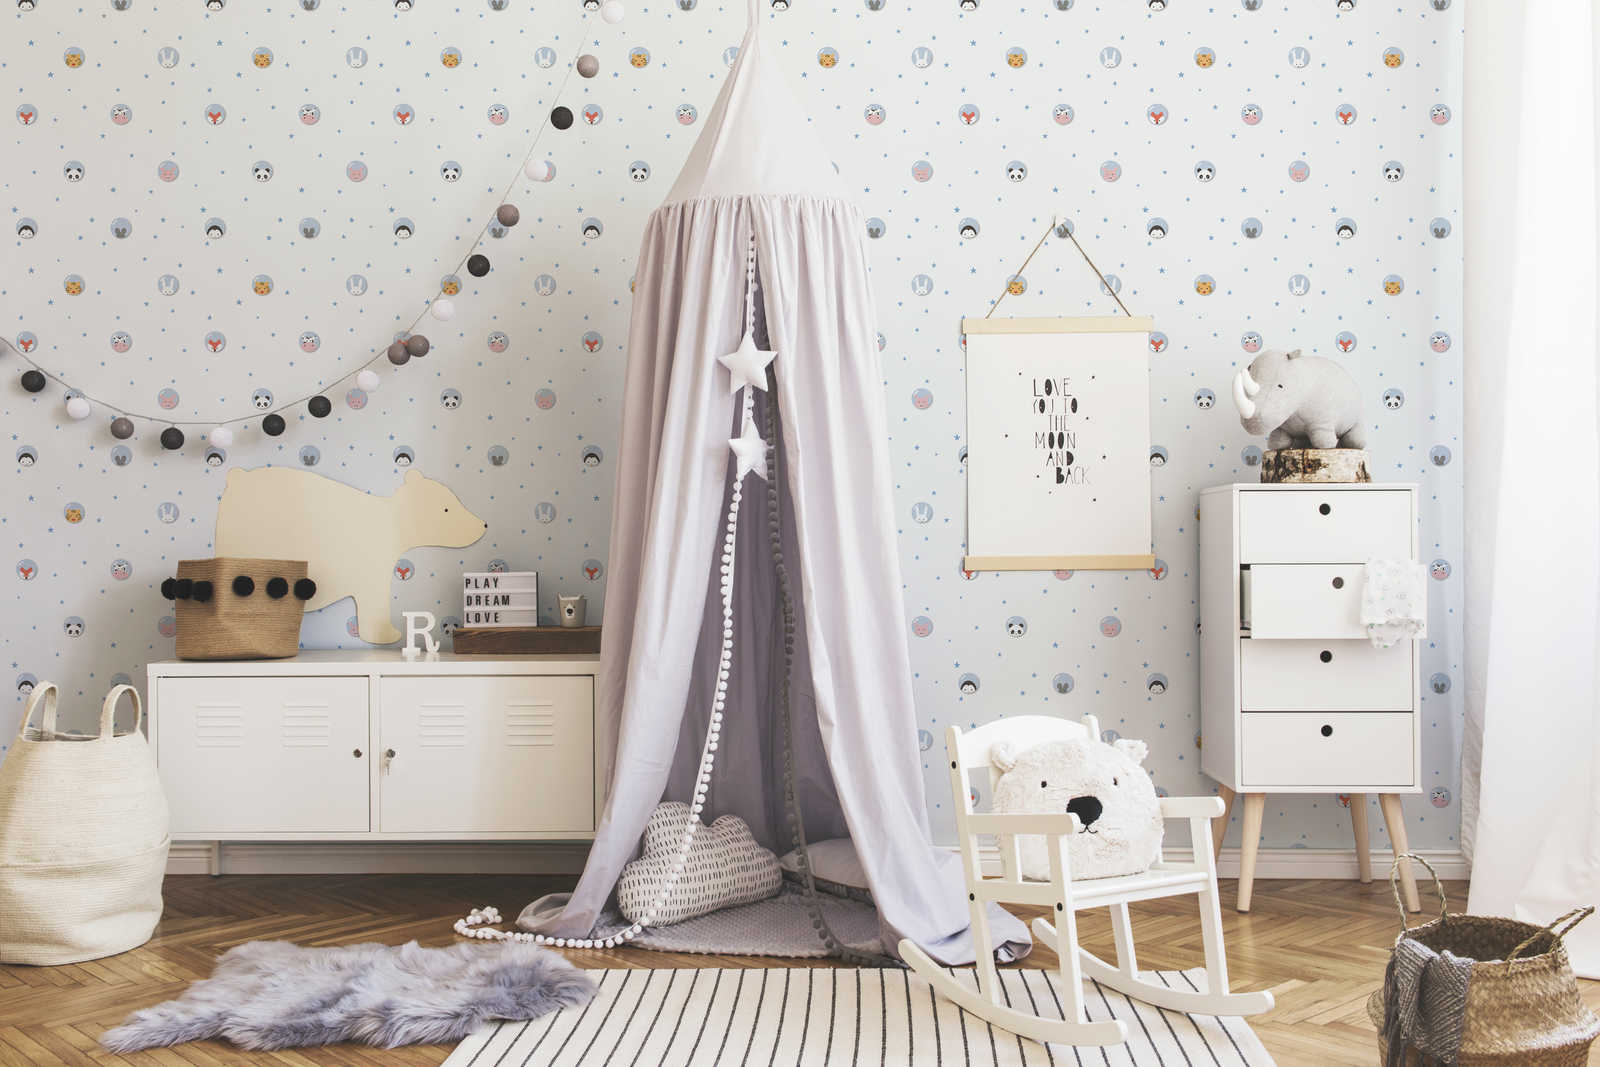             Kinderkamer behang dieren & sterren - blauw, wit, roze
        